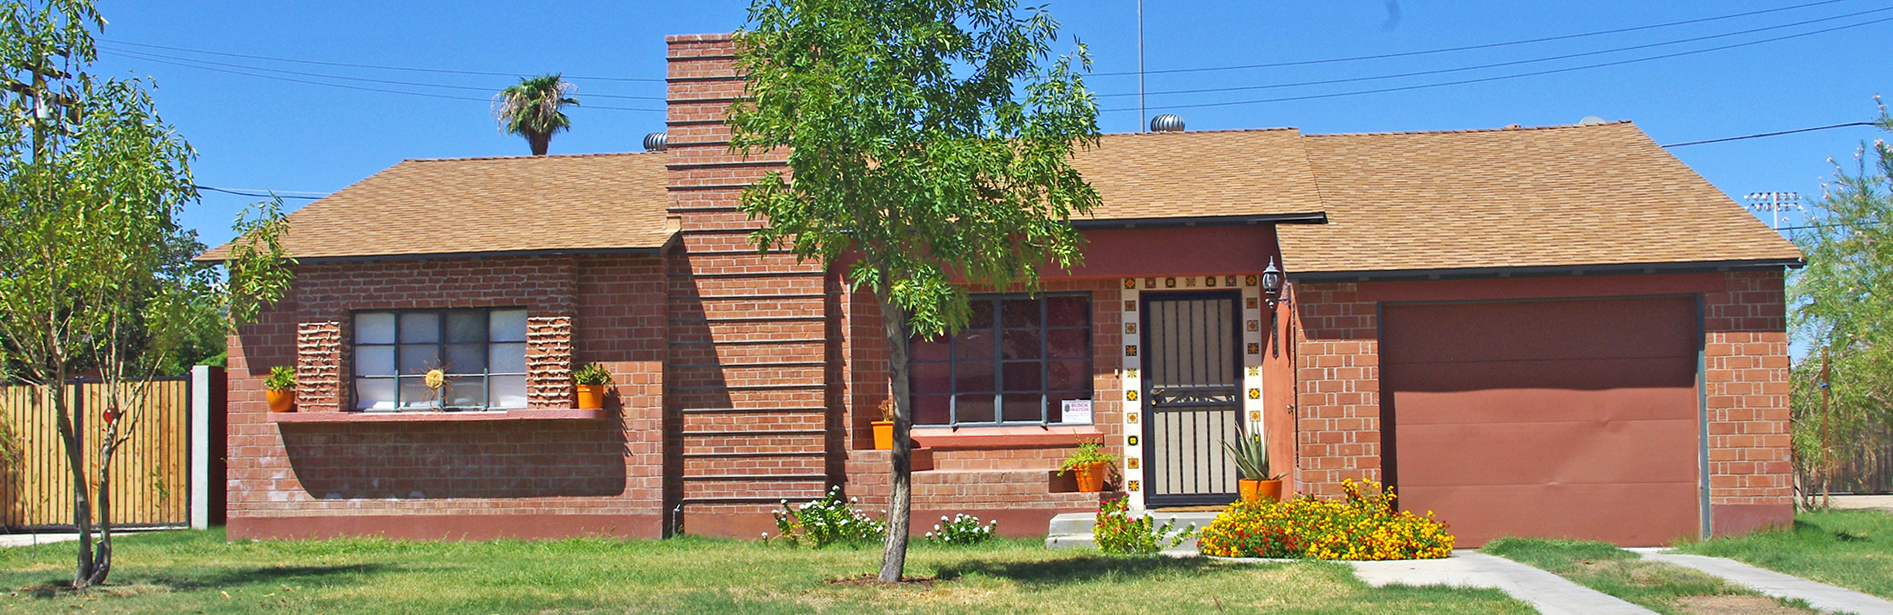 East Alvarado Historic District of Phoenix